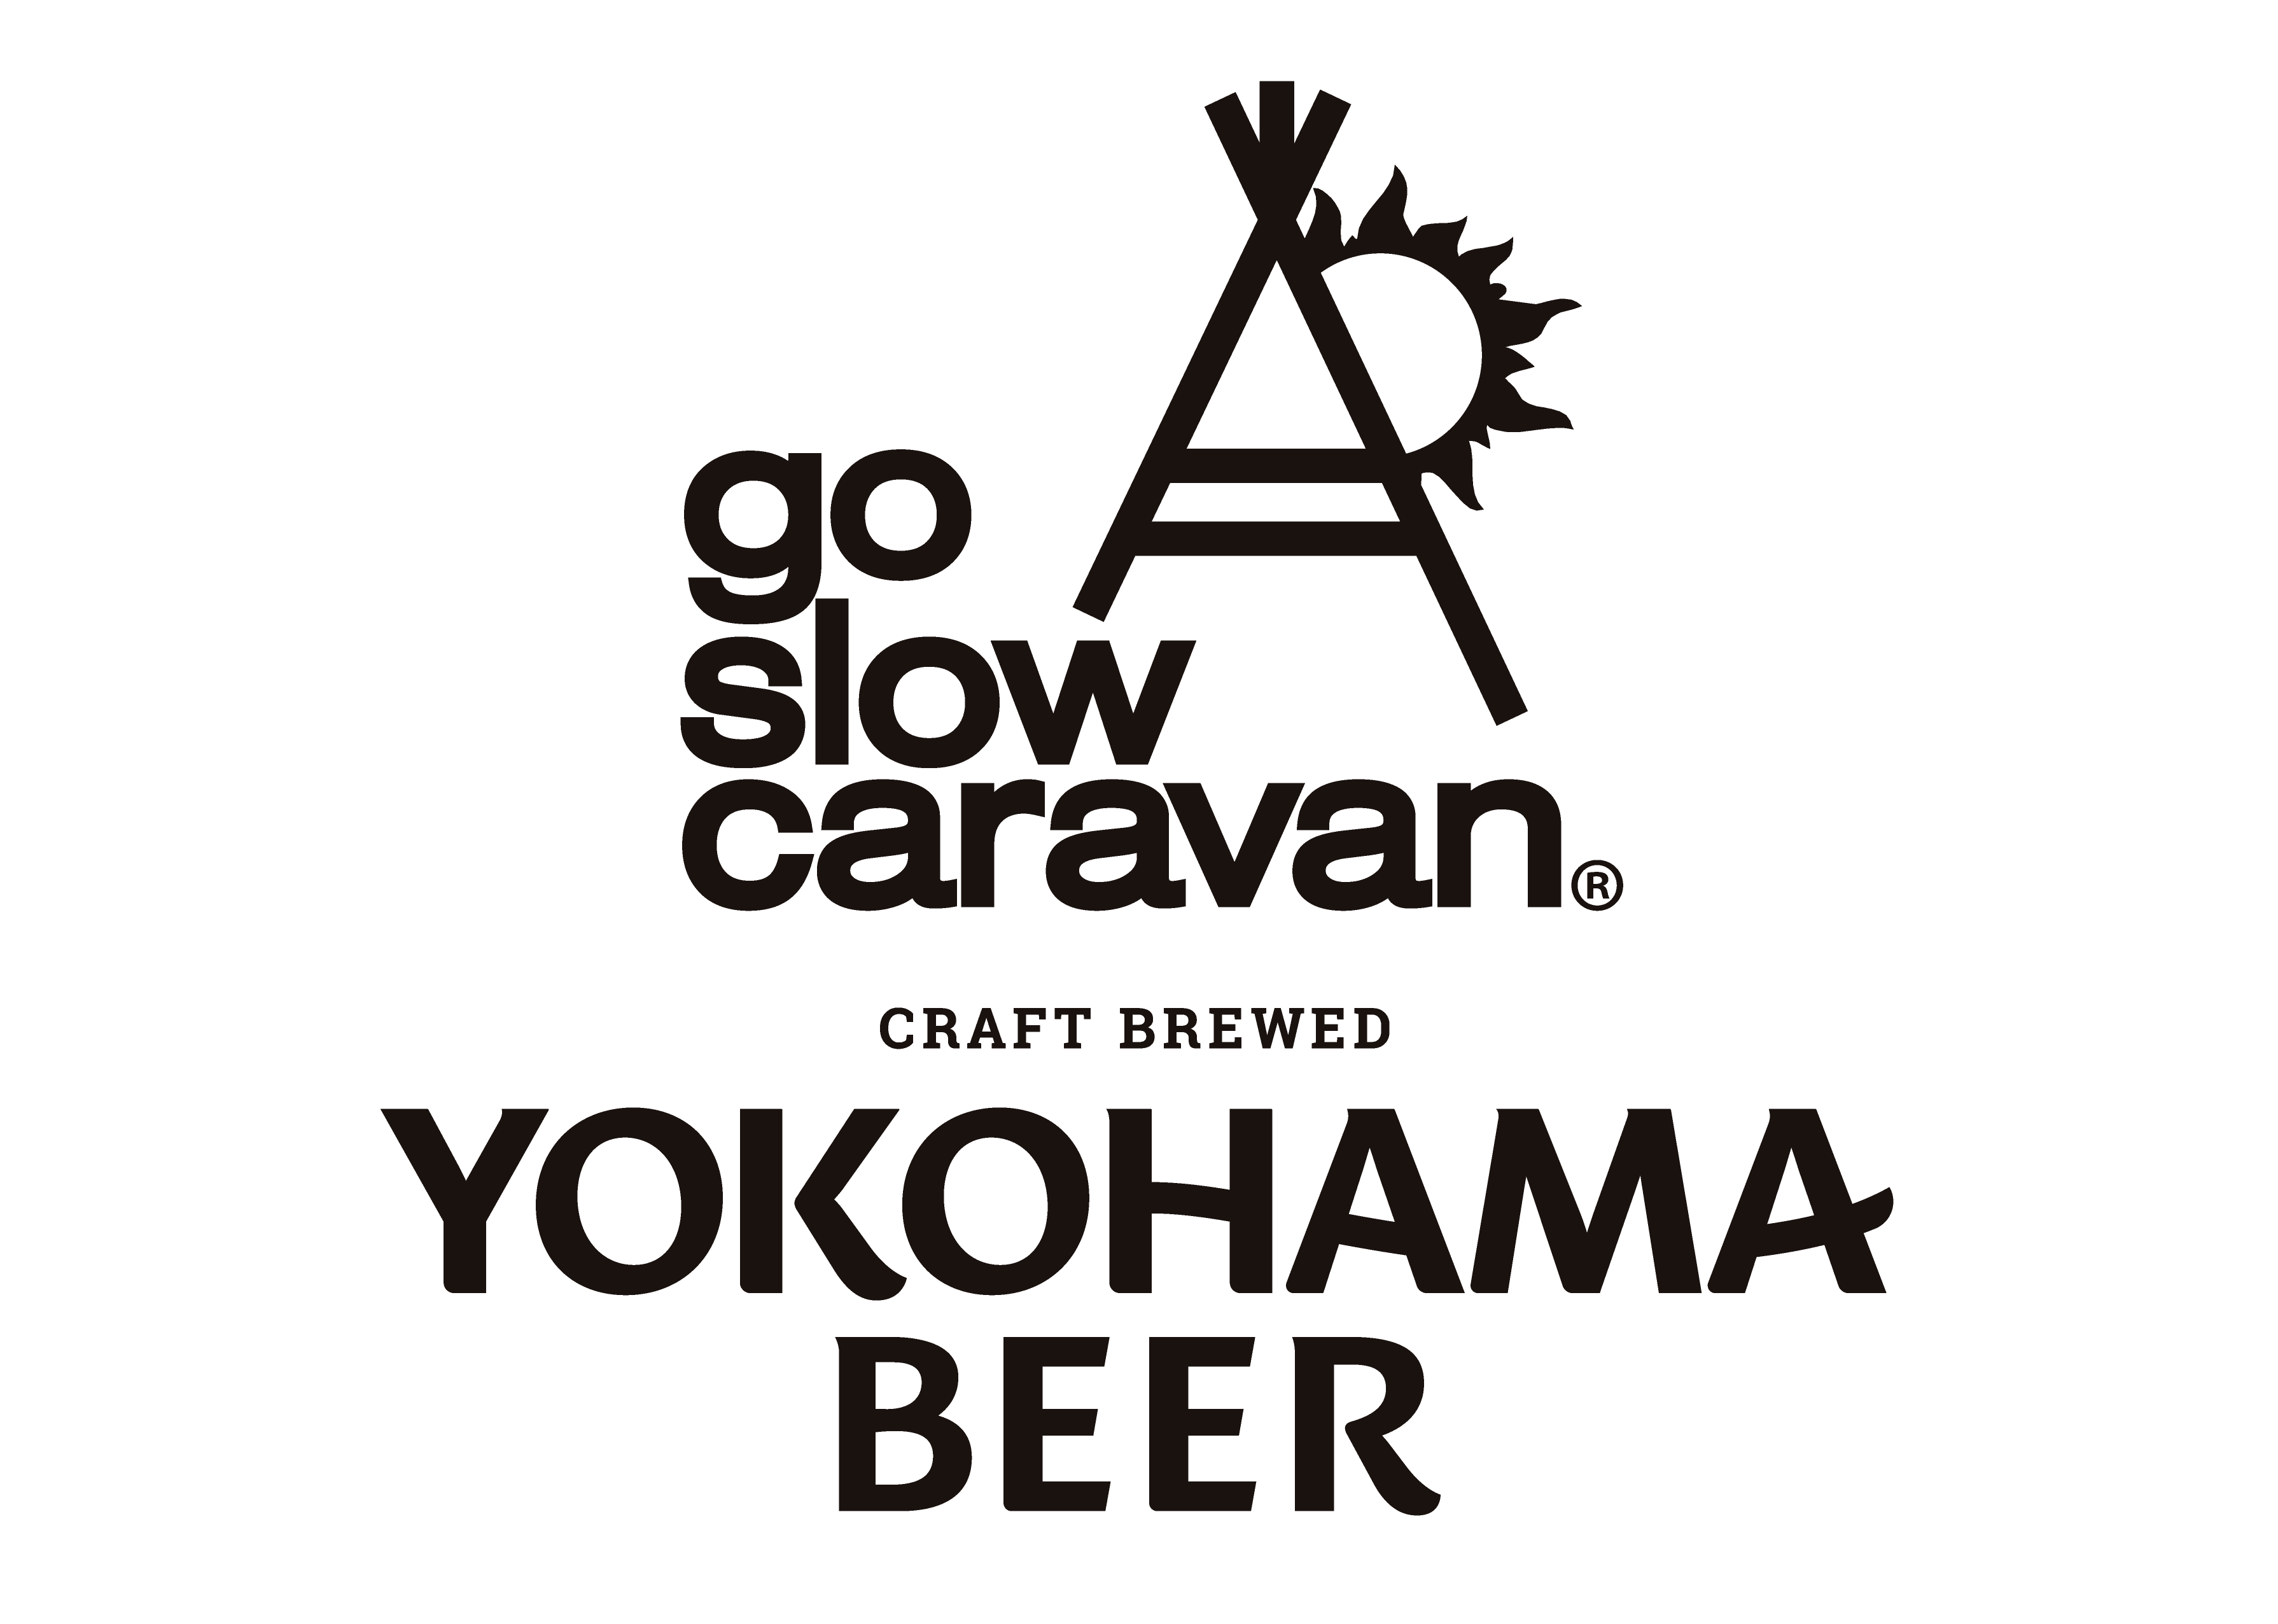 Go Slow Caravanコラボレーションラベルビール 6本セット 7月1日 木 12 00 予約受付開始 300セット限定販売 横浜ビール 通販サイト